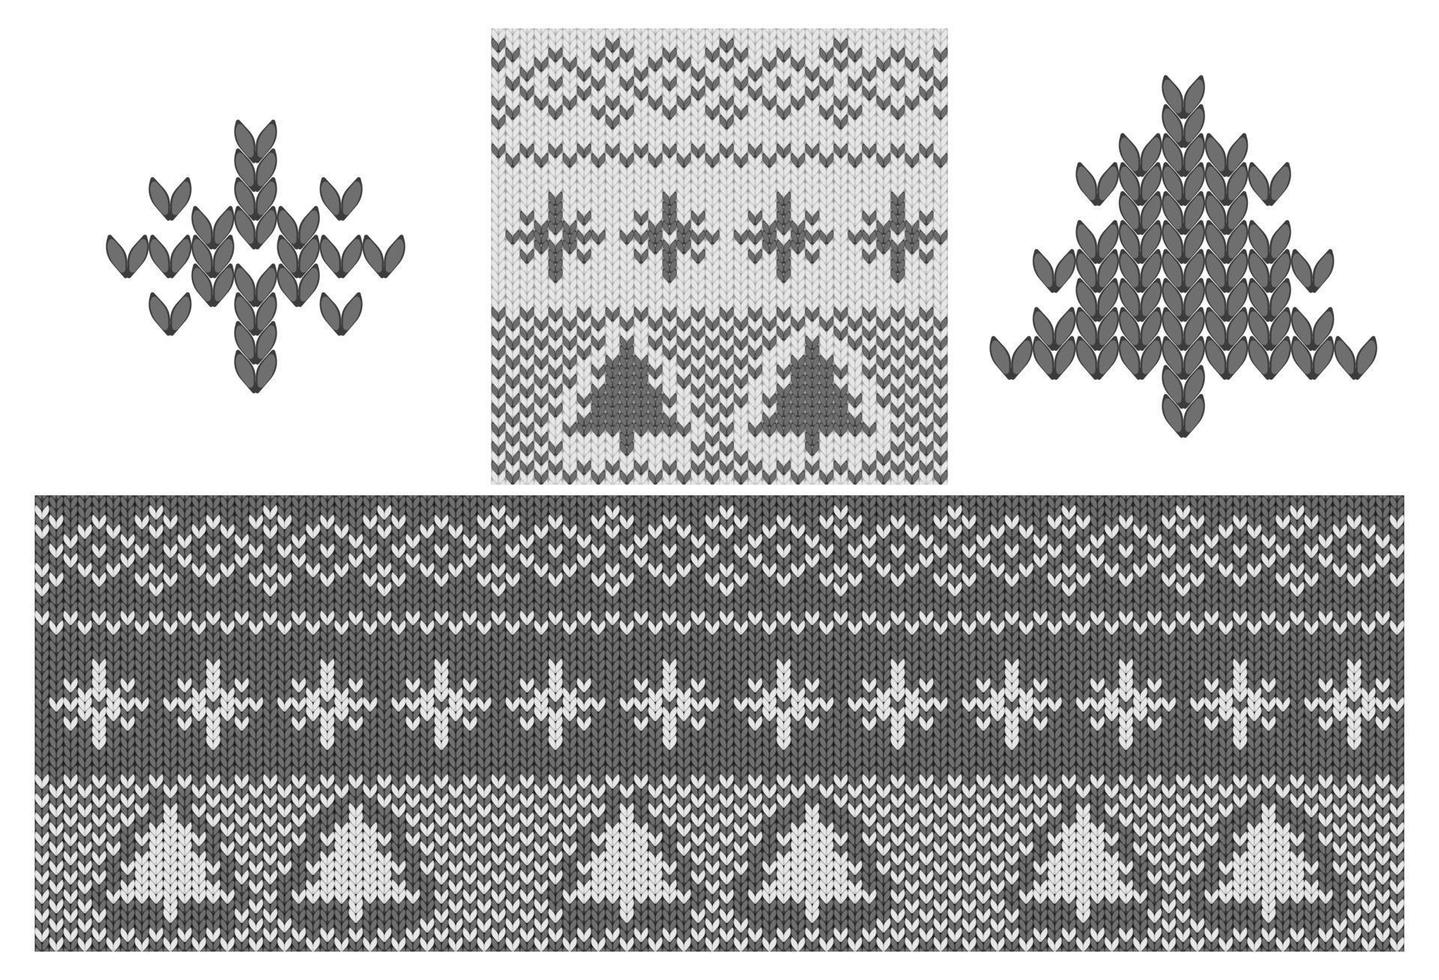 svart och vit jul mönster bakgrund. semestertröja med fairisle prydnad för tröja eller tröja. stickad vinterdesign vektor